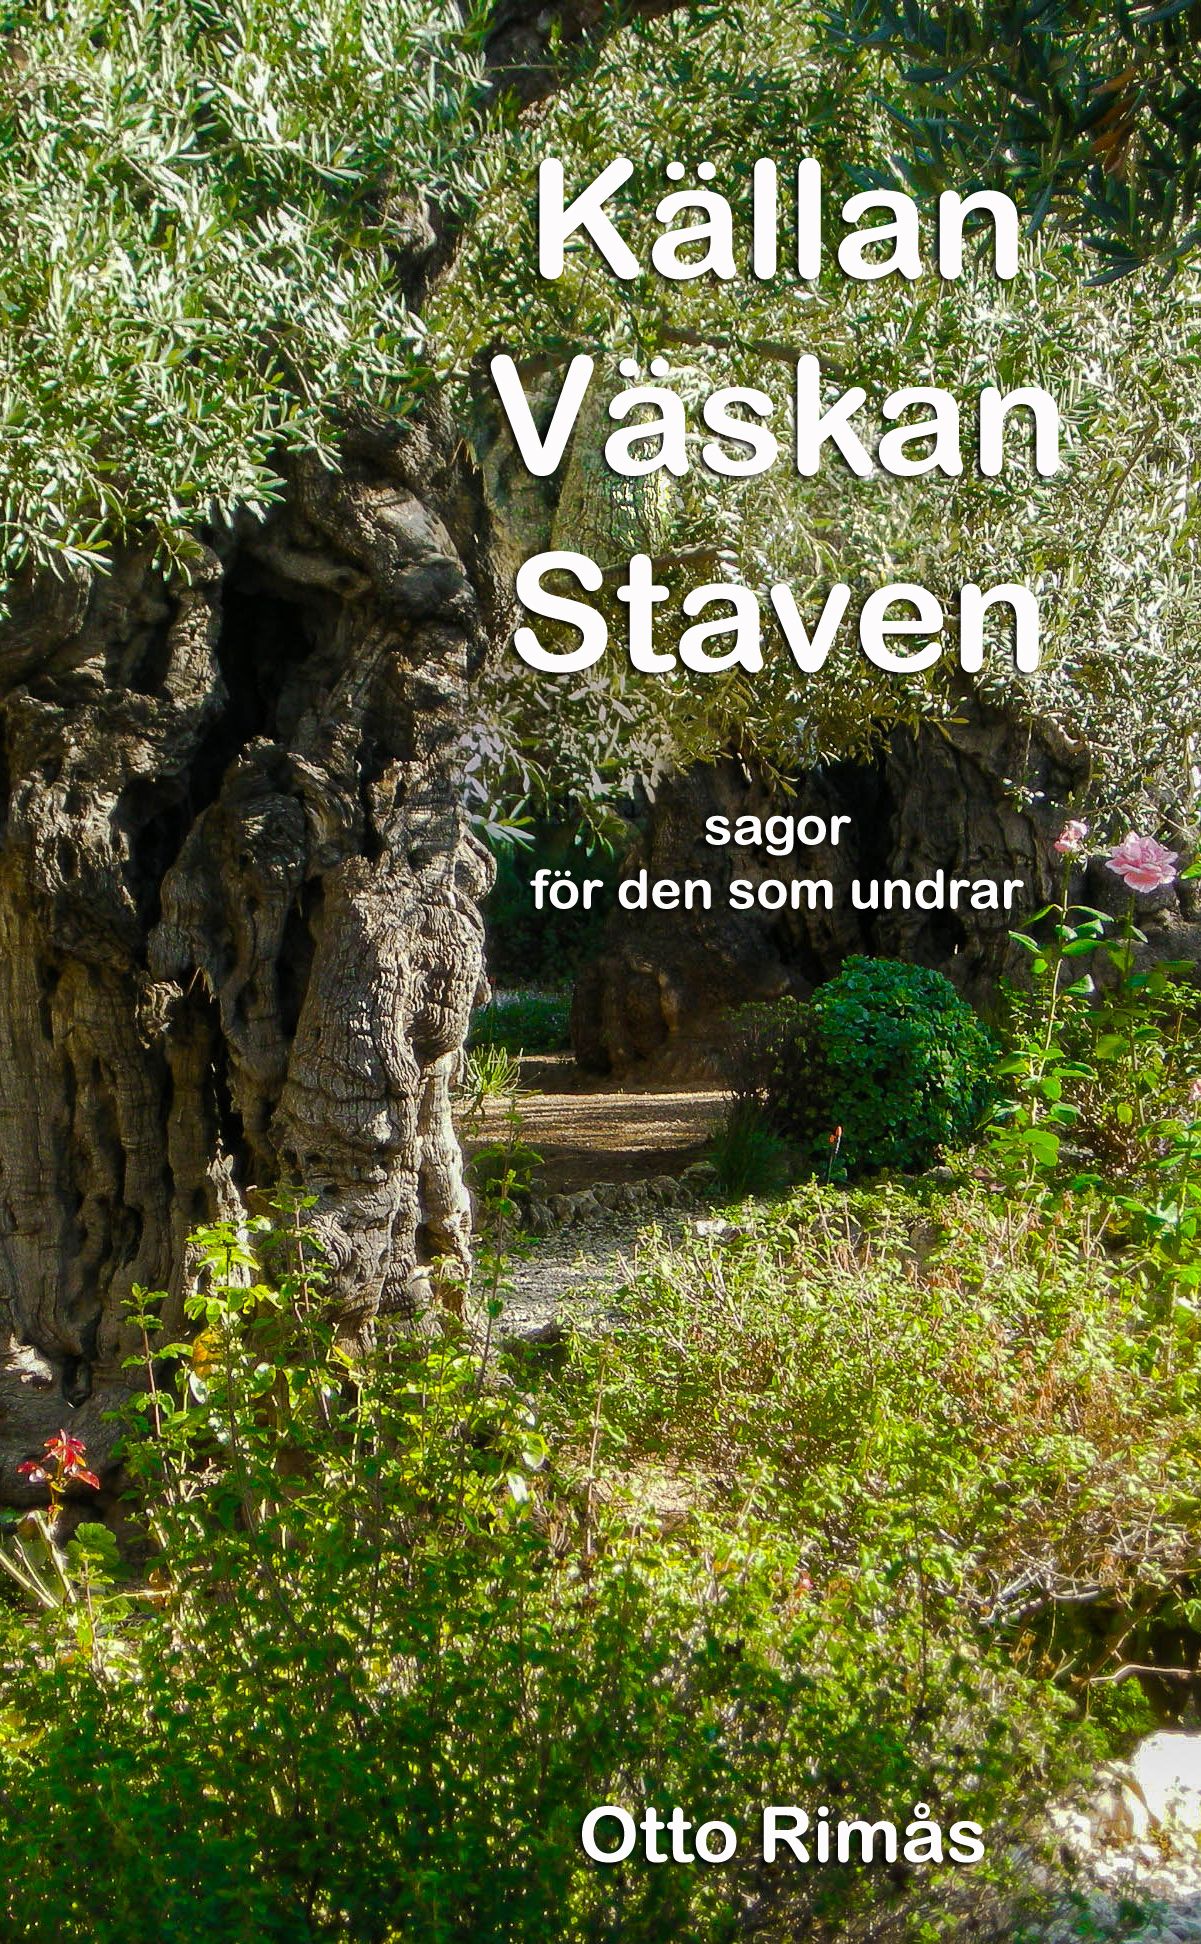 Källan Väskan Staven - sagor för den som undrar, eBook by Otto Rimås